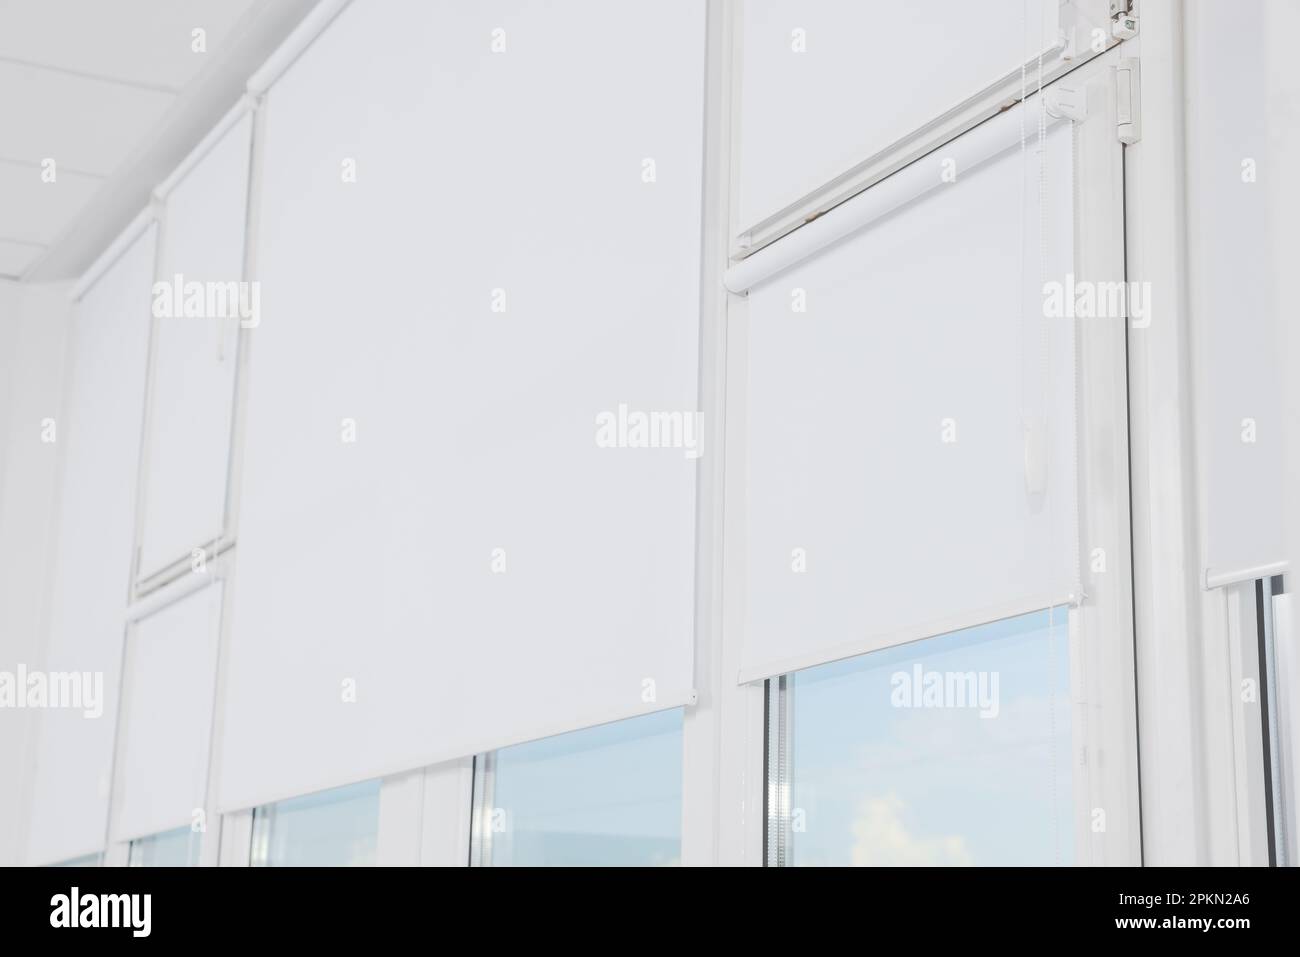 https://c8.alamy.com/compes/2pkn2a6/ventanas-de-plastico-con-persianas-enrollables-blancas-en-el-interior-2pkn2a6.jpg